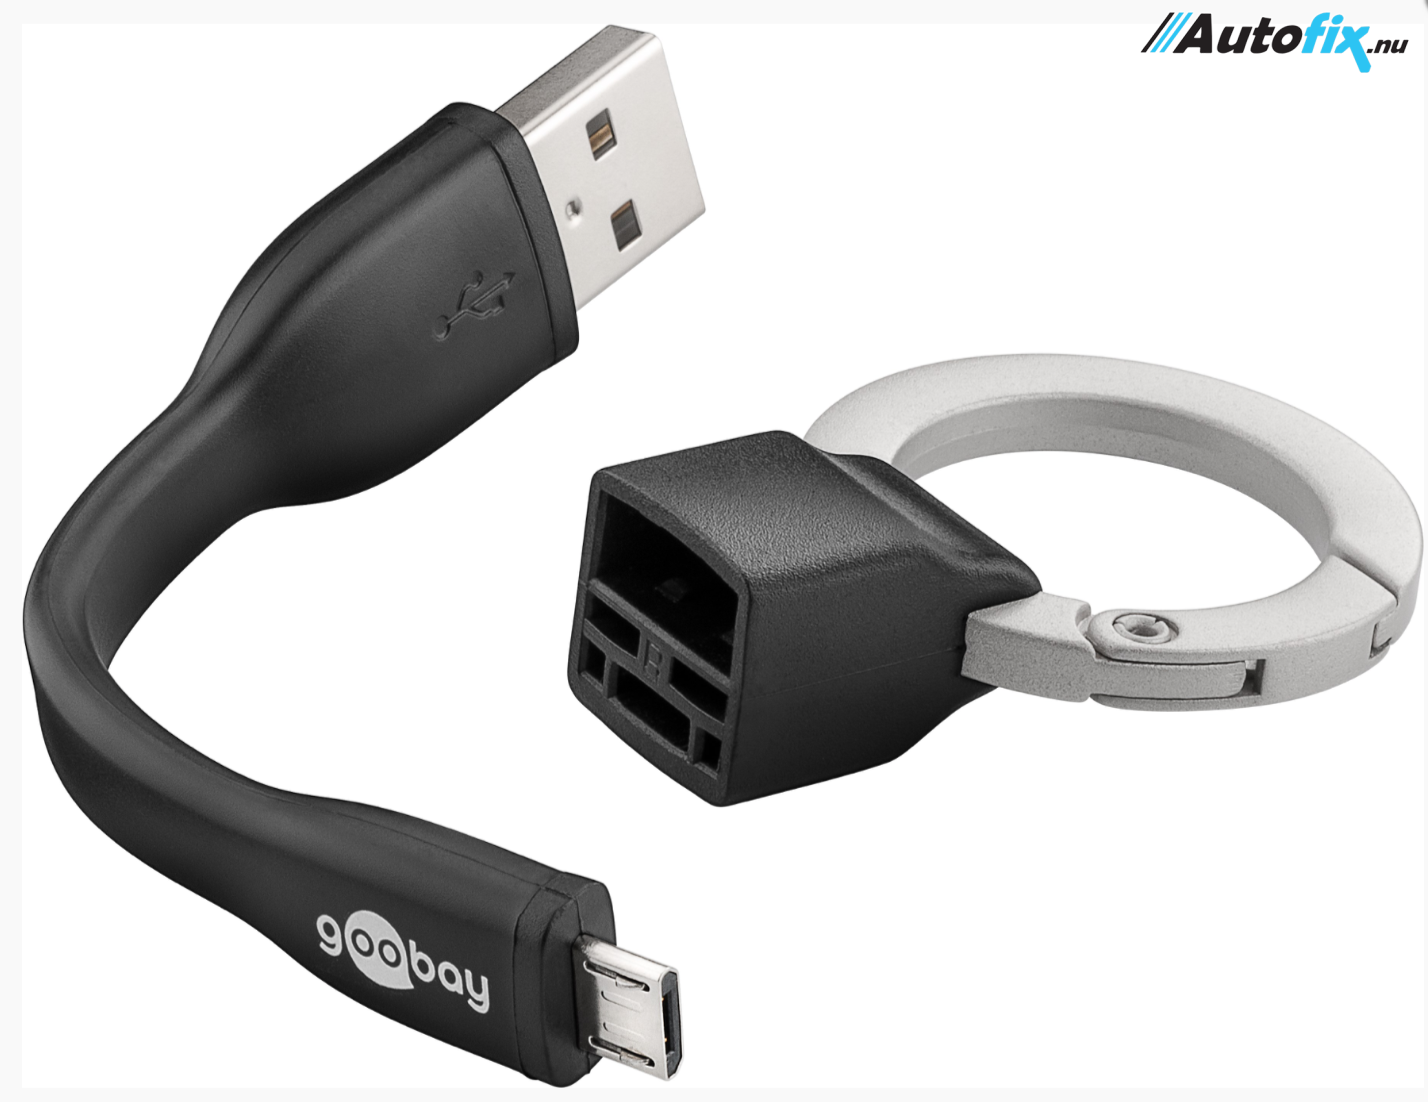 Blive skør Effektivitet skepsis Nøglering med Micro-USB kabel - Længde 8,5 cm. - Ladekabel & AUX stik -  Autofix.nu